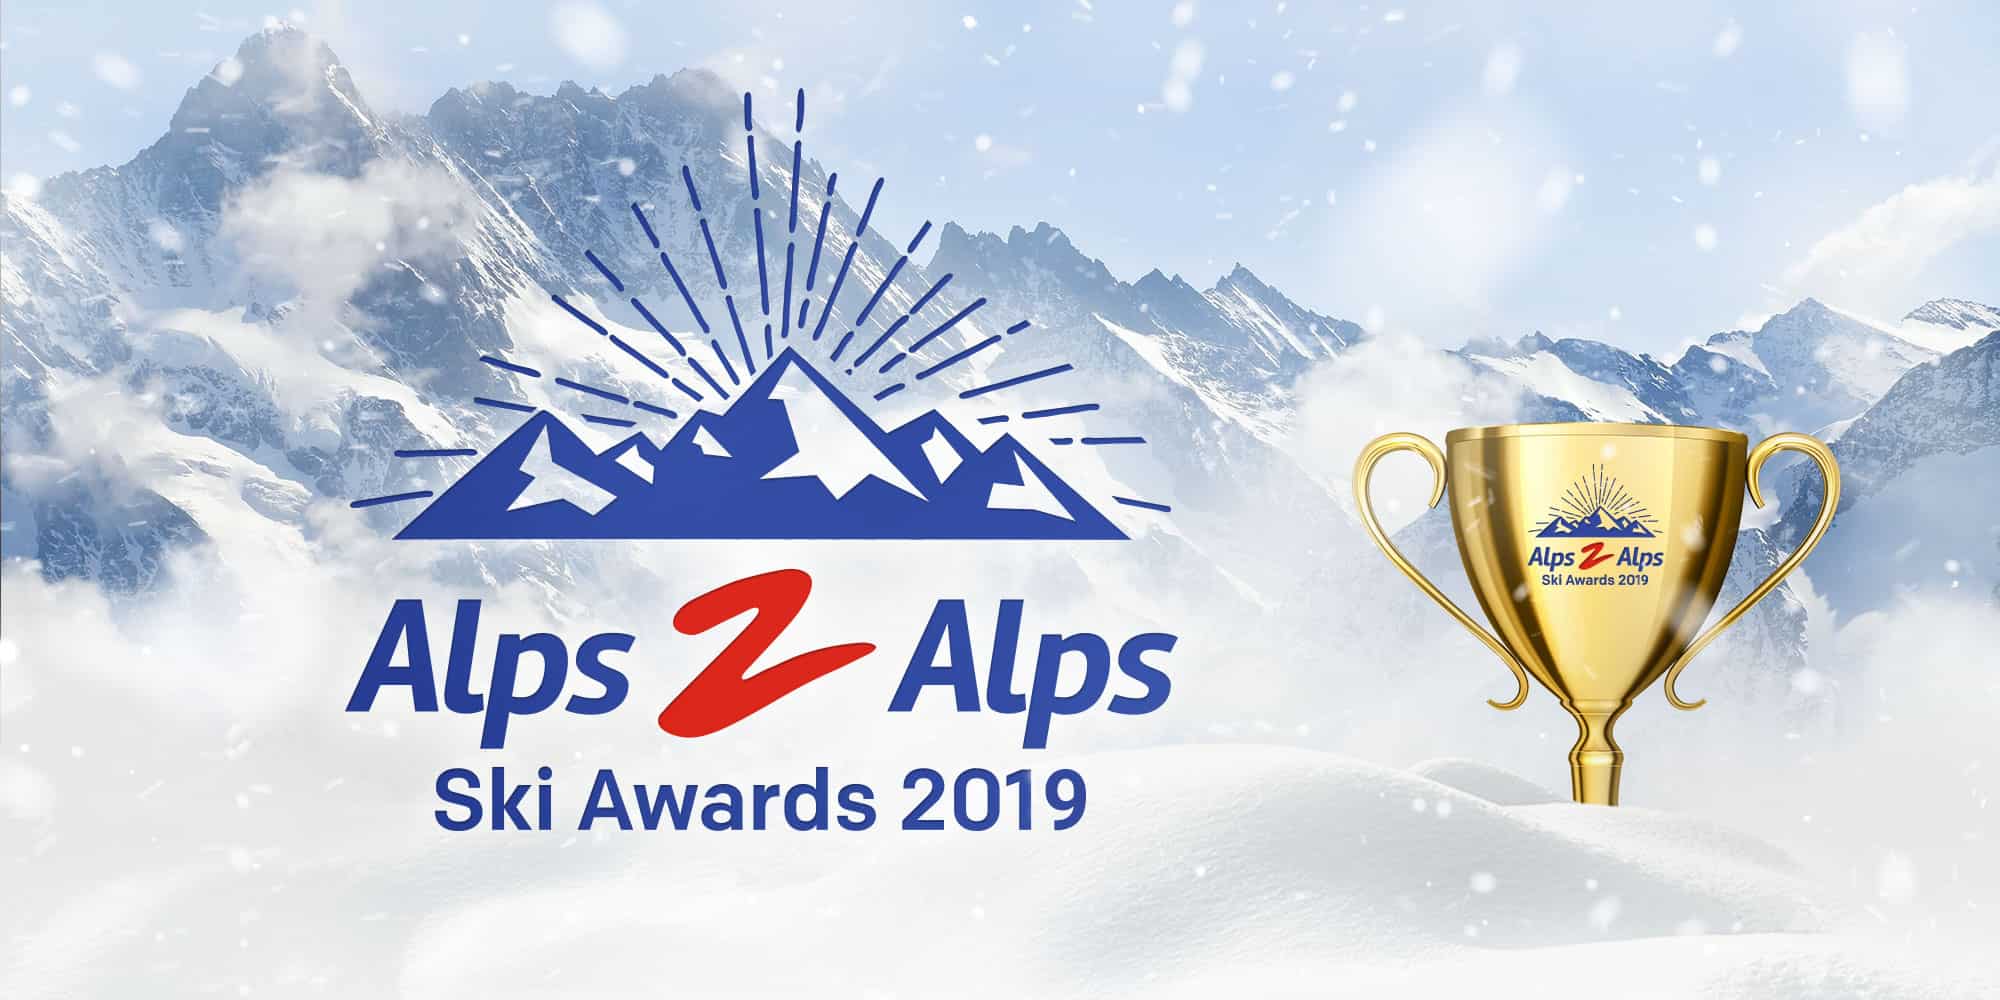 The Alps2Alps ski awards banner